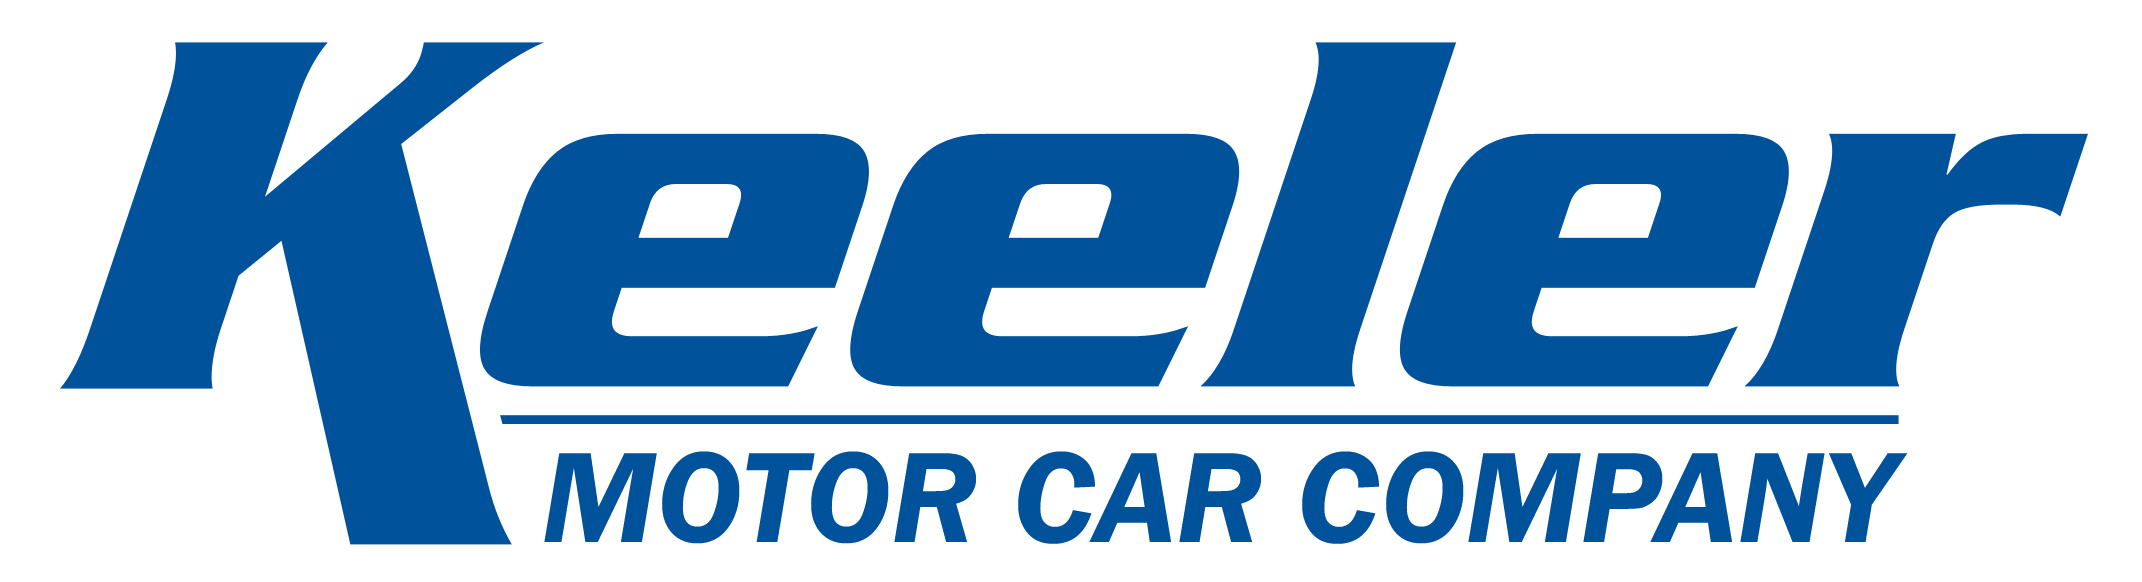 Keeler Motor Car Company Company Logo